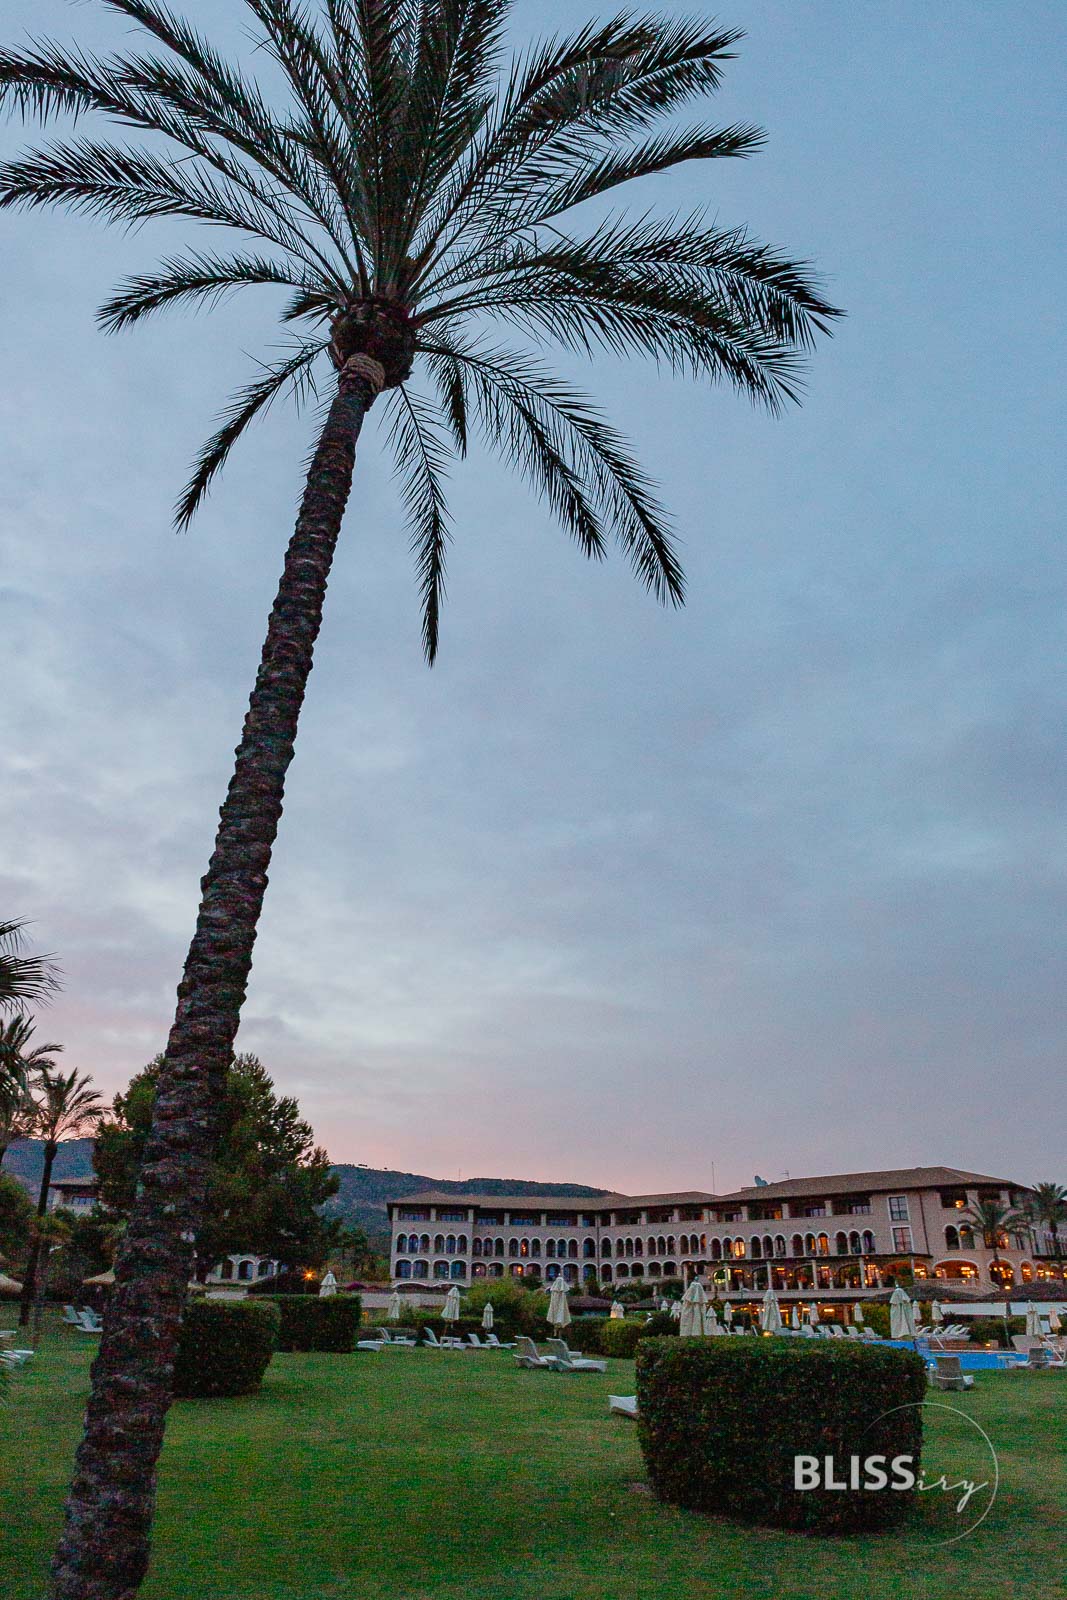 St. Regis Hotel Mardavall - Mallorca - Erfahrungen und Eindrücke - Luxushotel und Luxusblog